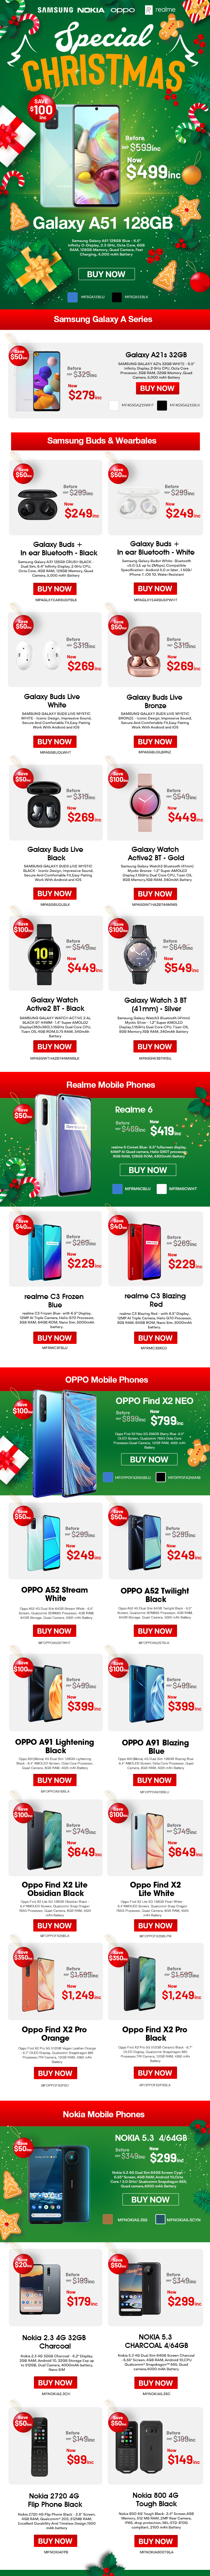 Mobiles Christmas Promo